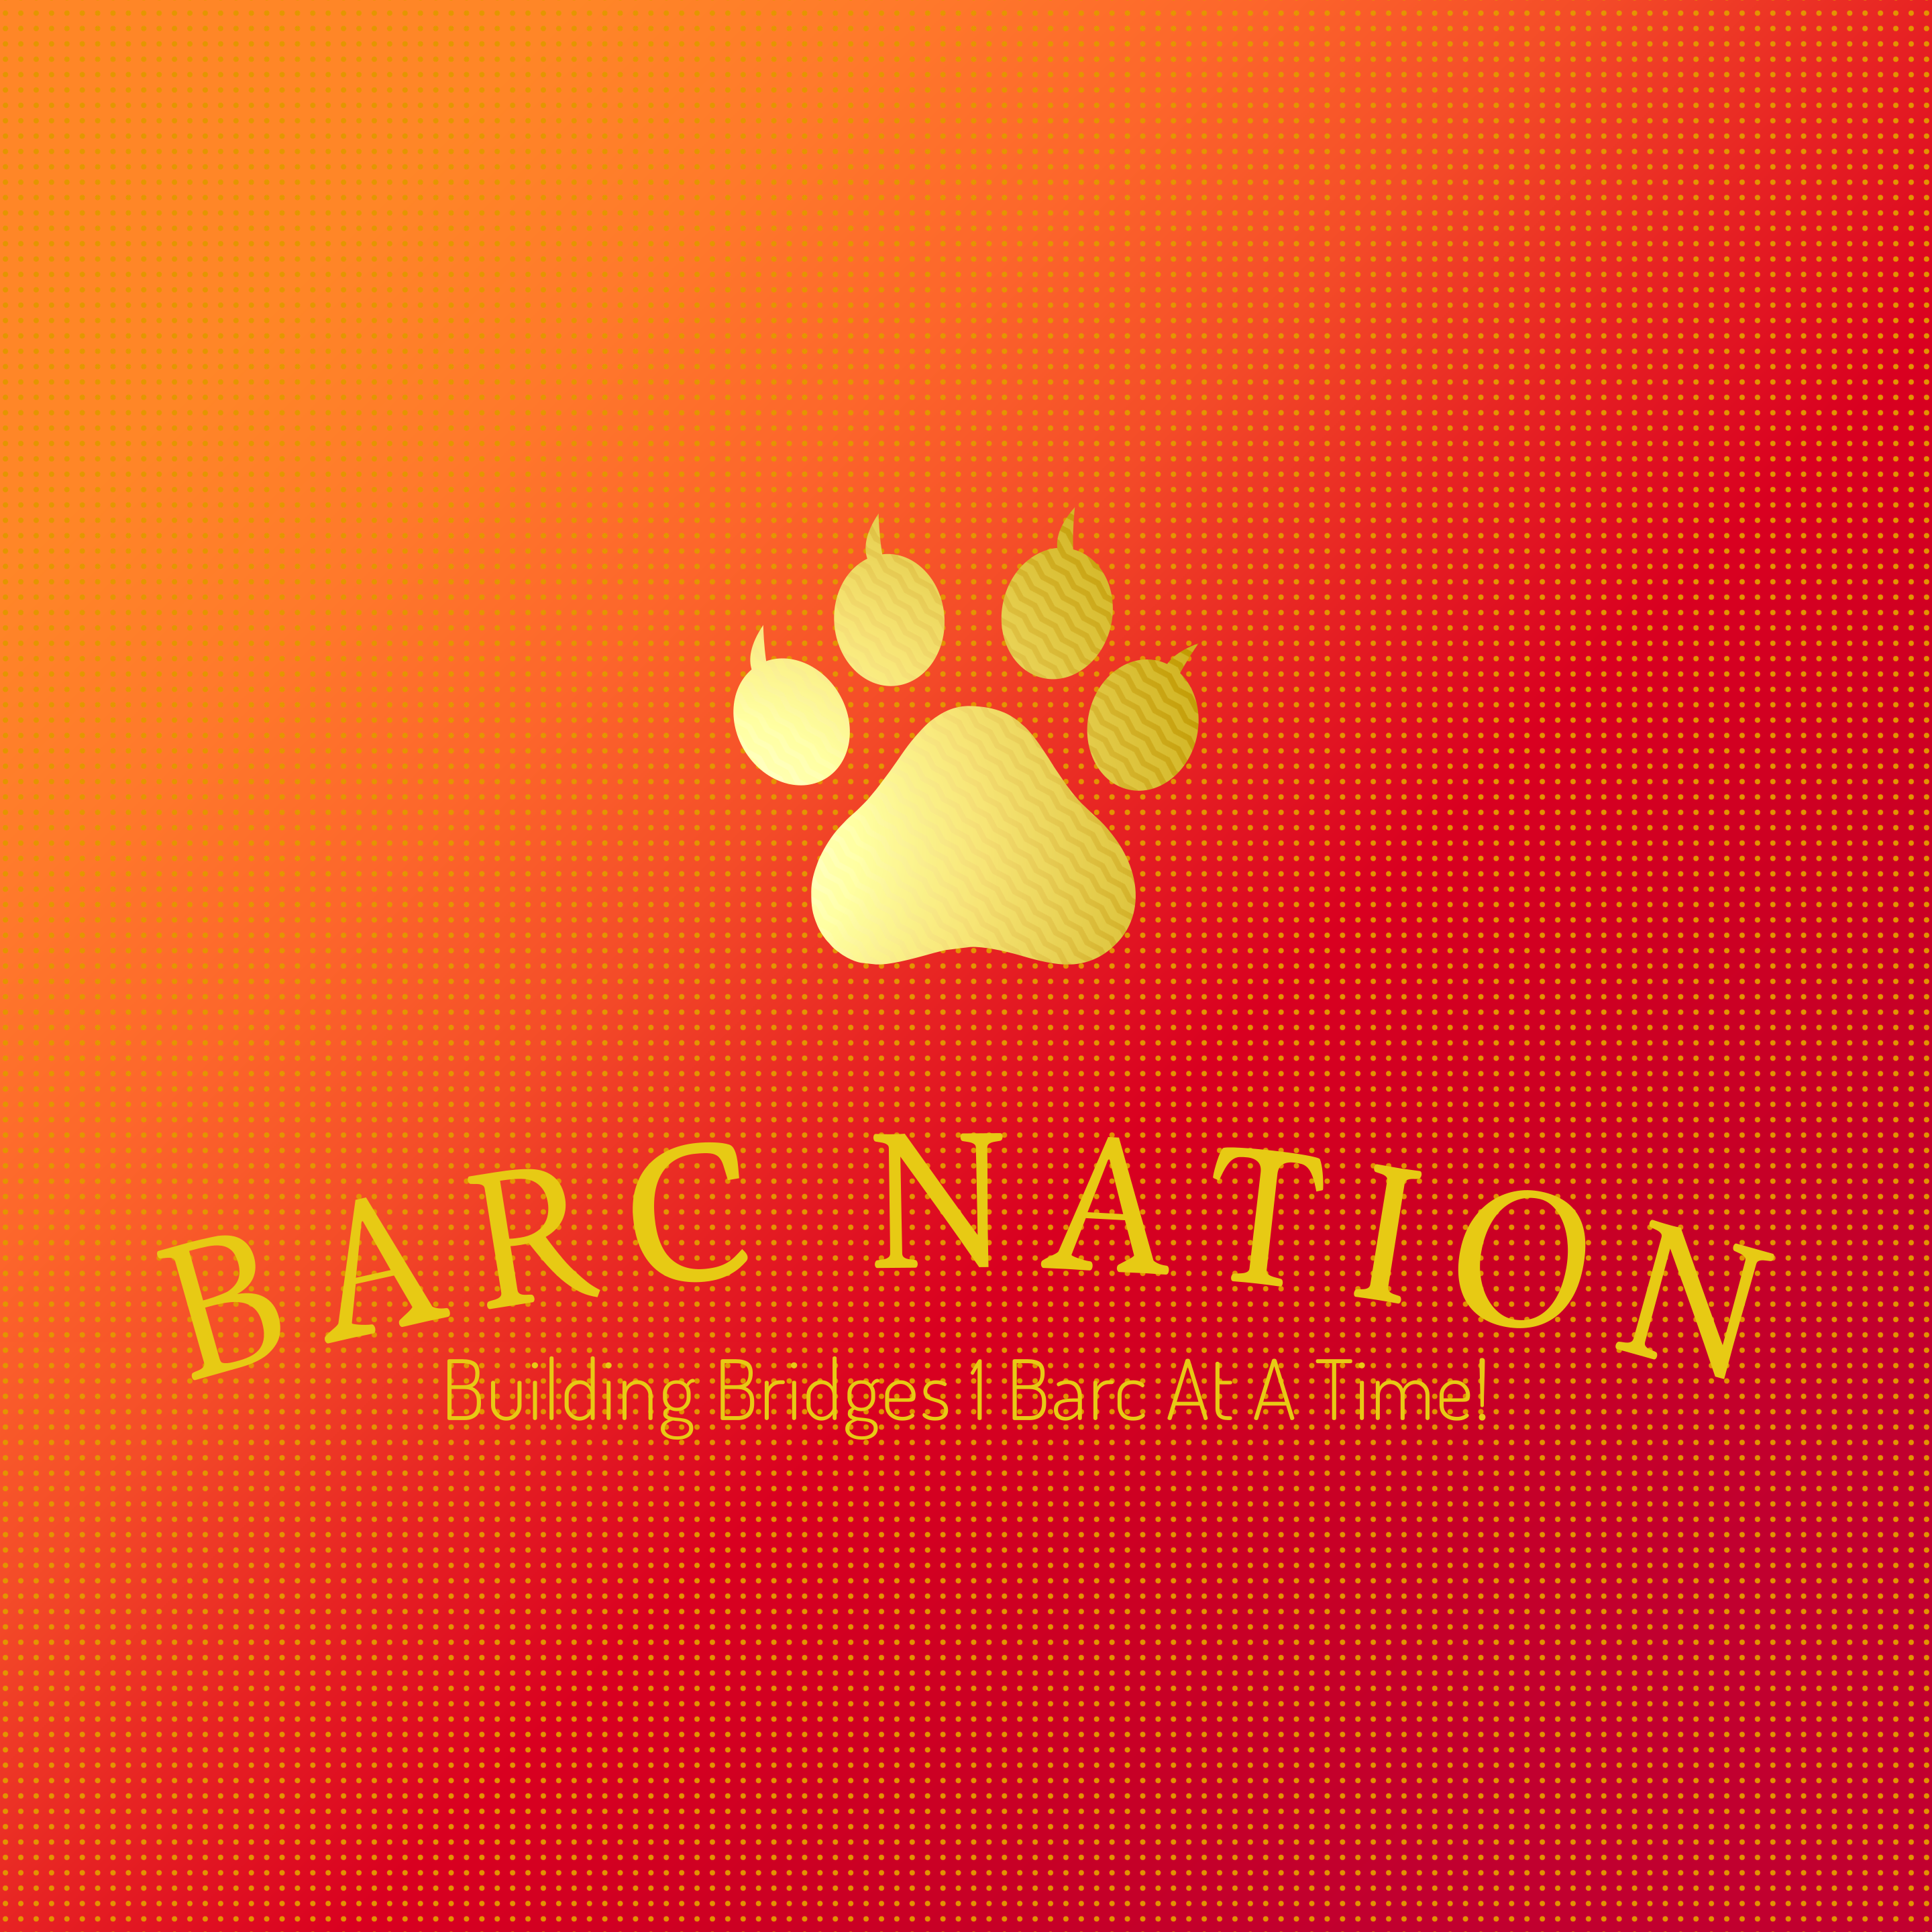 BARC Nation